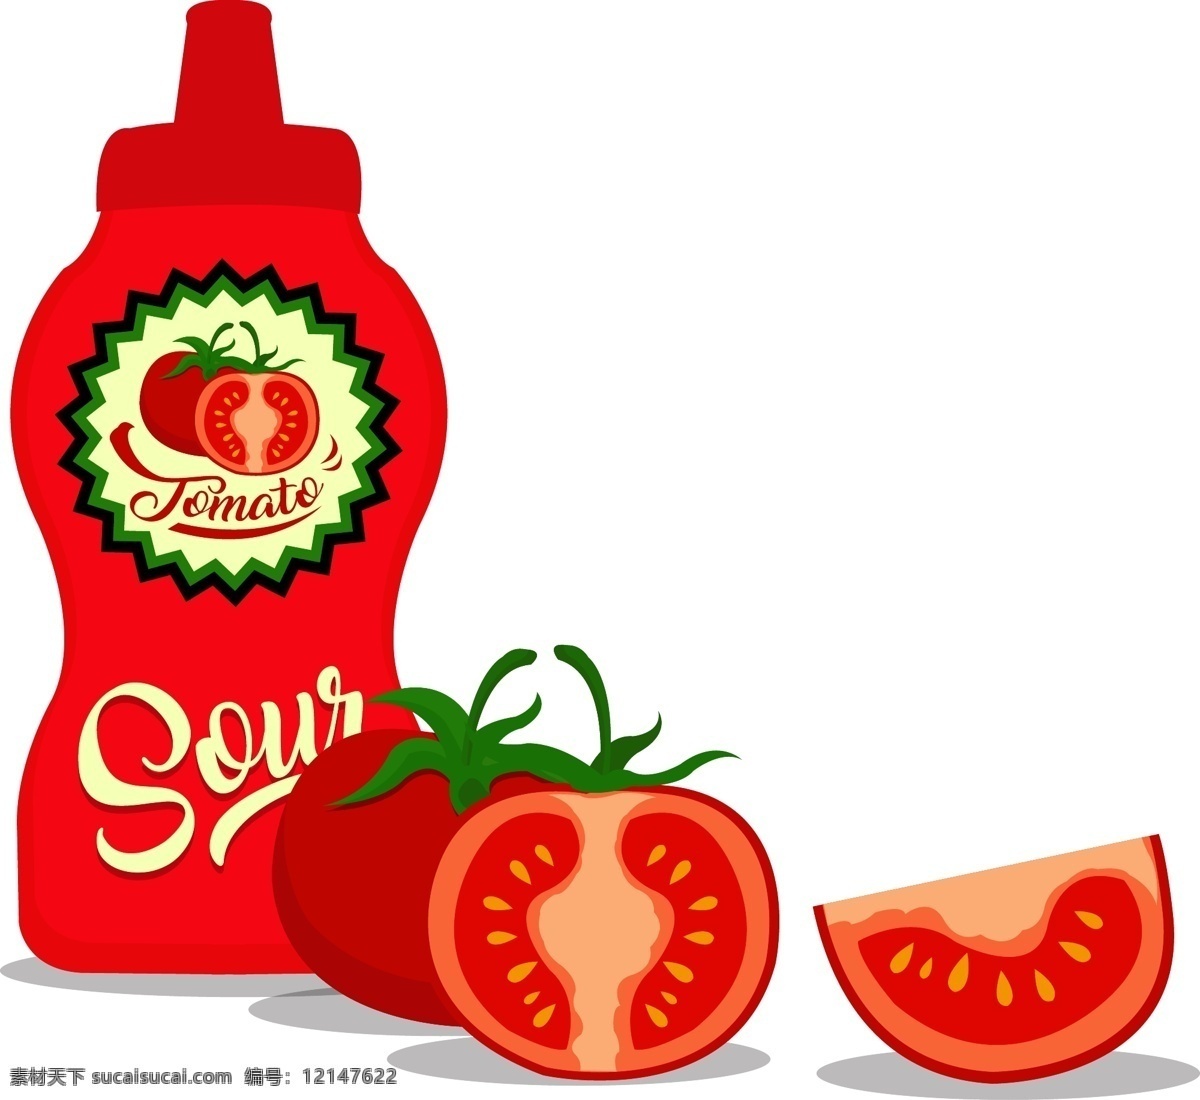 原材料 无 添加剂 番茄酱 矢量图 红色 蔬菜 透明元素 ai元素 免抠元素